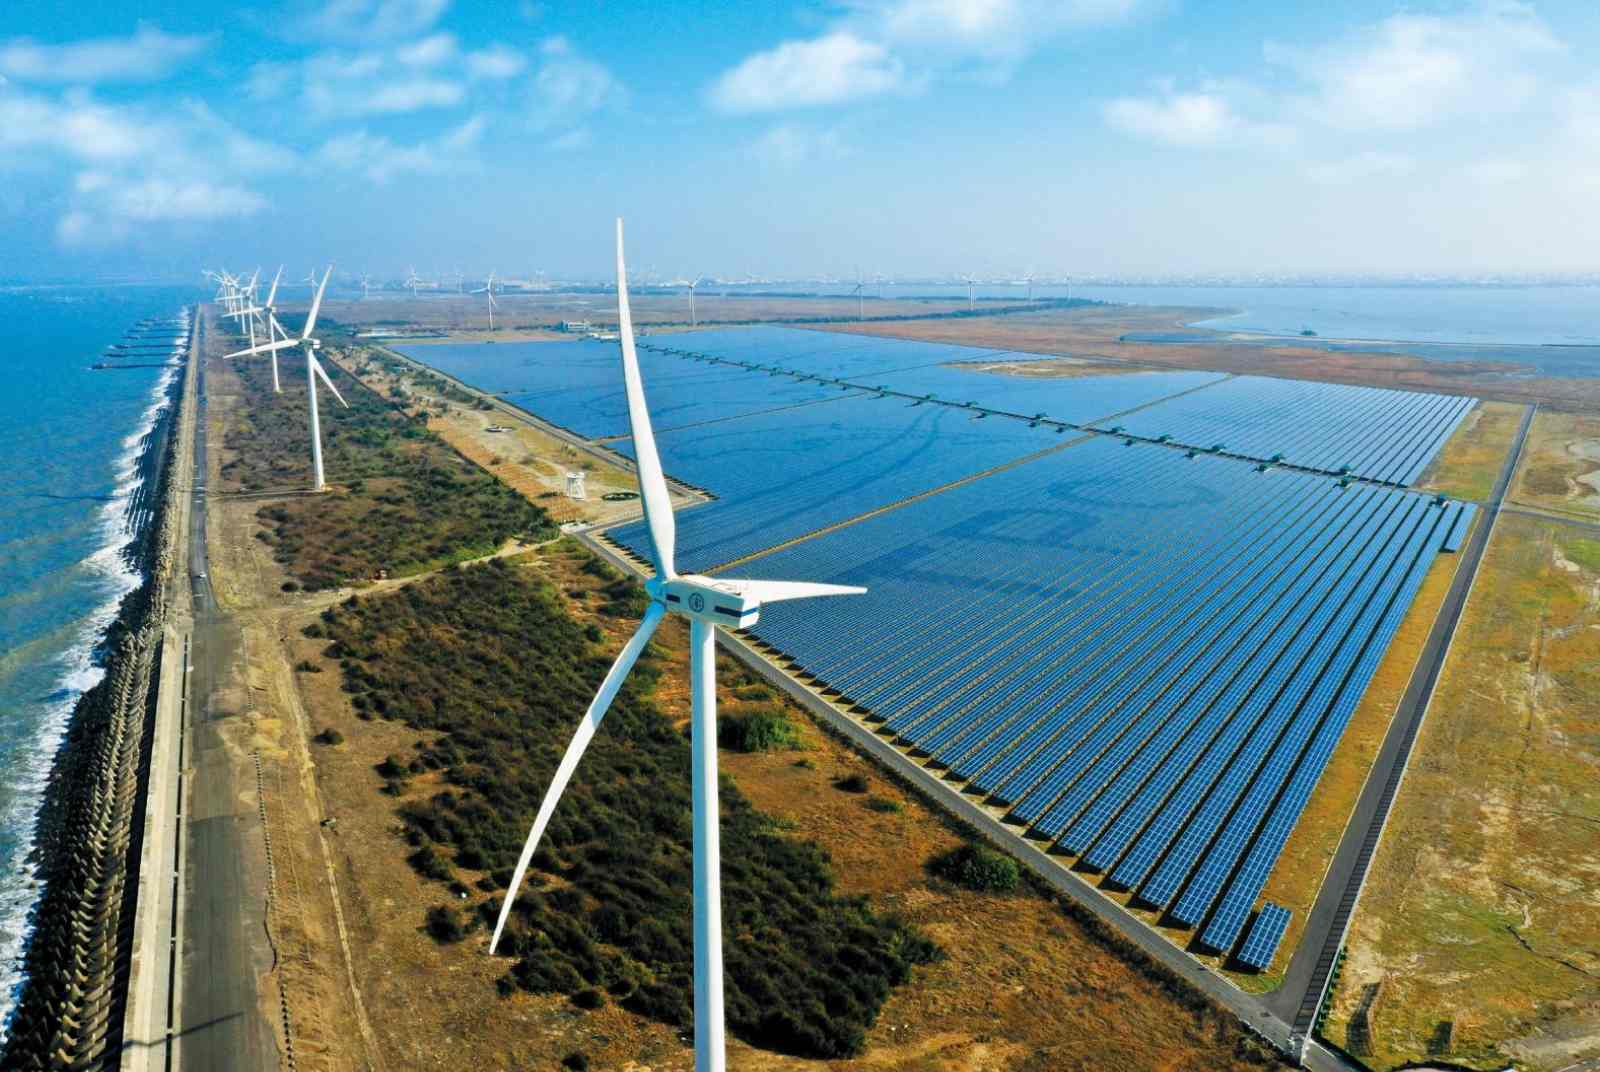 綠能-再生能源-能源-台電-太陽能-風力發電-節能-環保-減碳